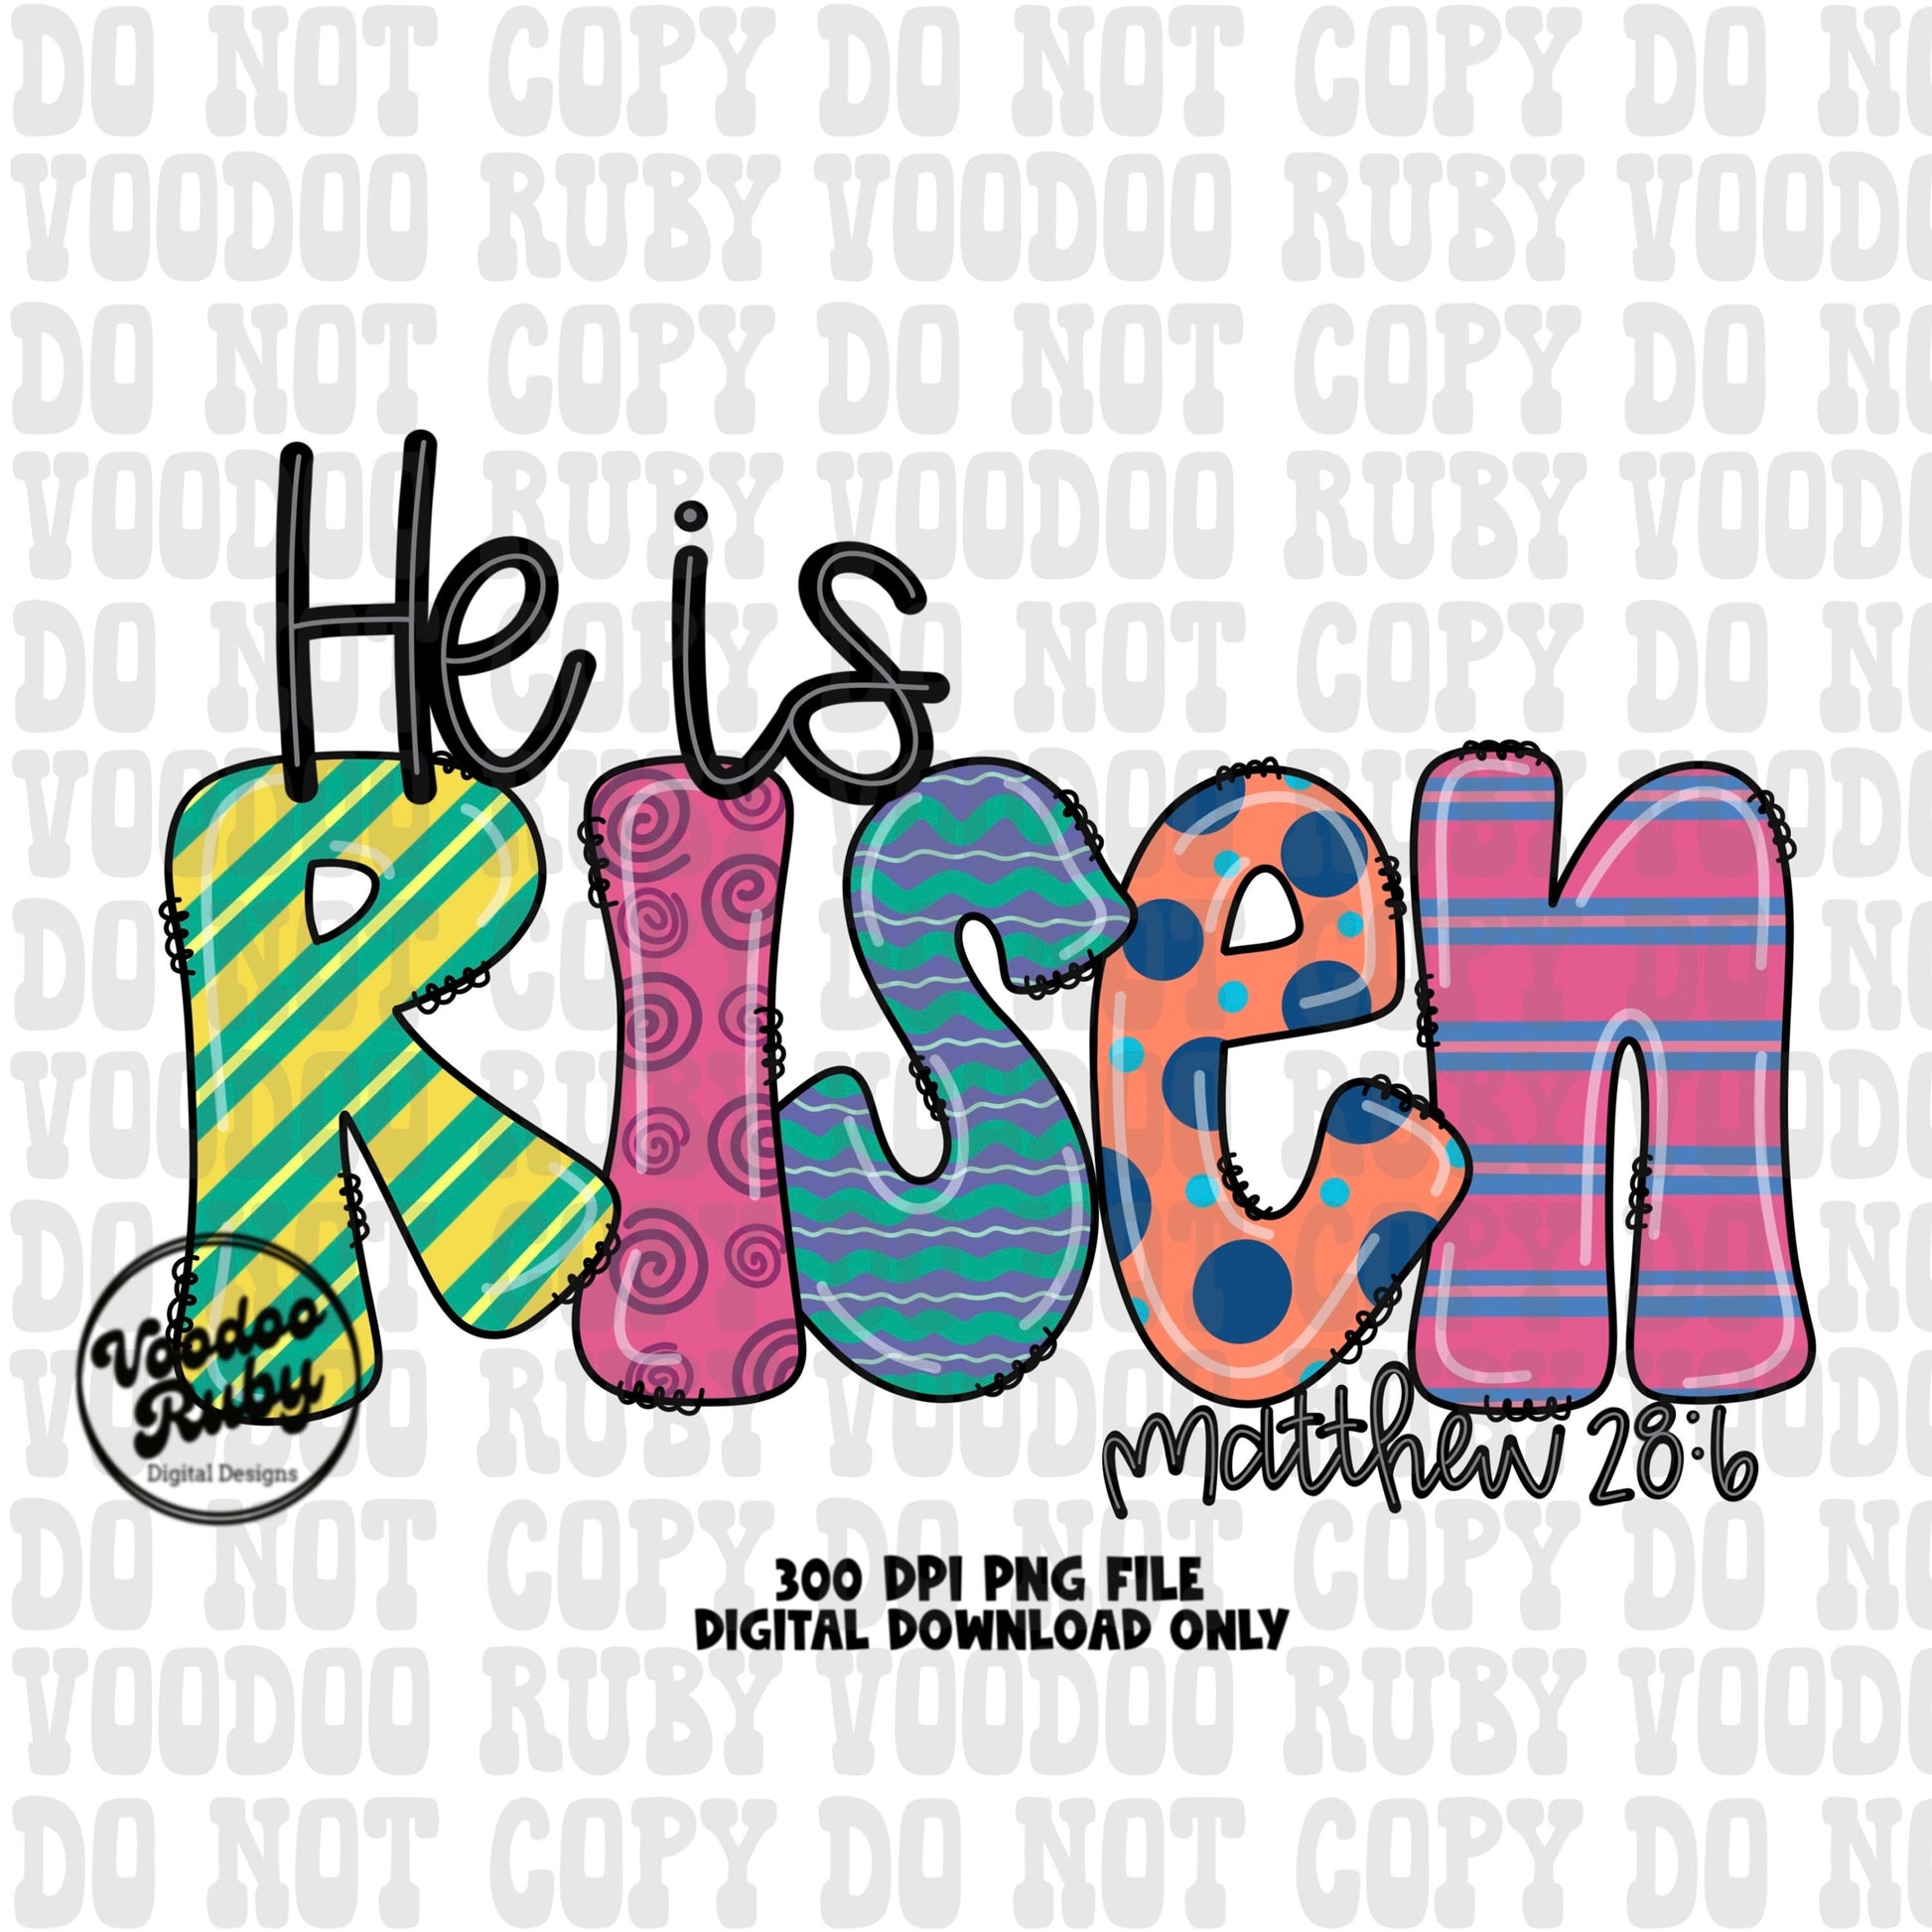 Risen PNG Design Easter PNG He Is Risen Sublimation Hand Drawn Digital Download DTF Printable Matthew 28:6 Clip Art Jesus png Easter Dtf